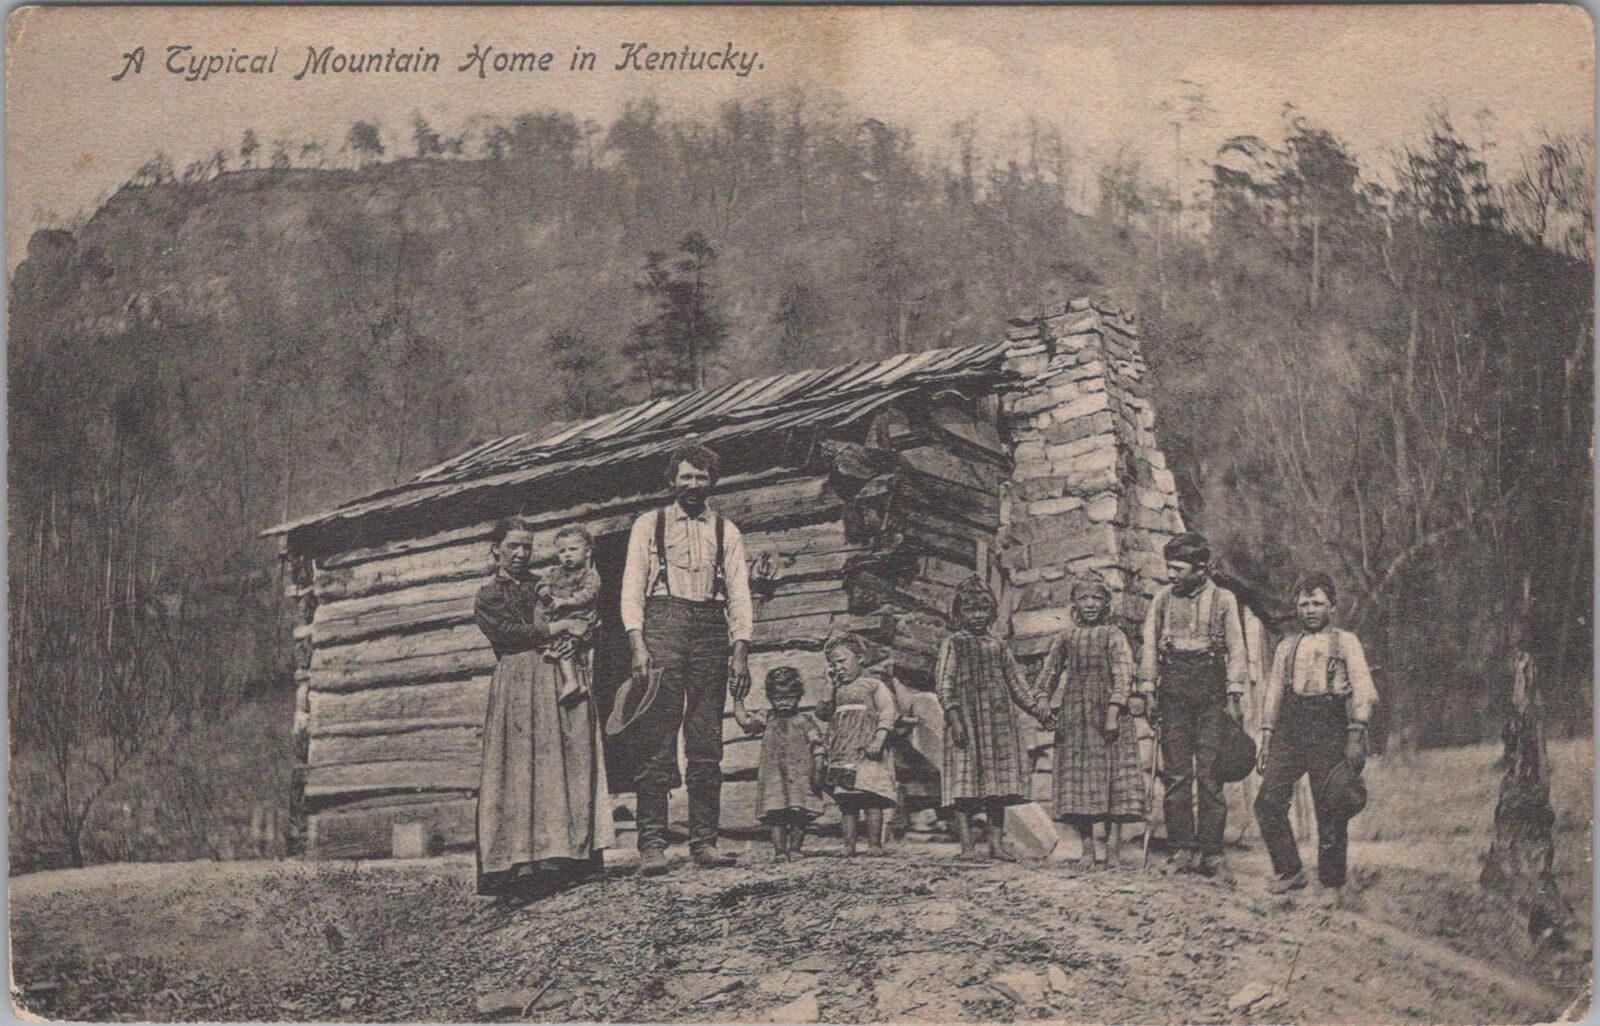 Family Outside Rural Mountain Home in Kentucky Lexington Postcard